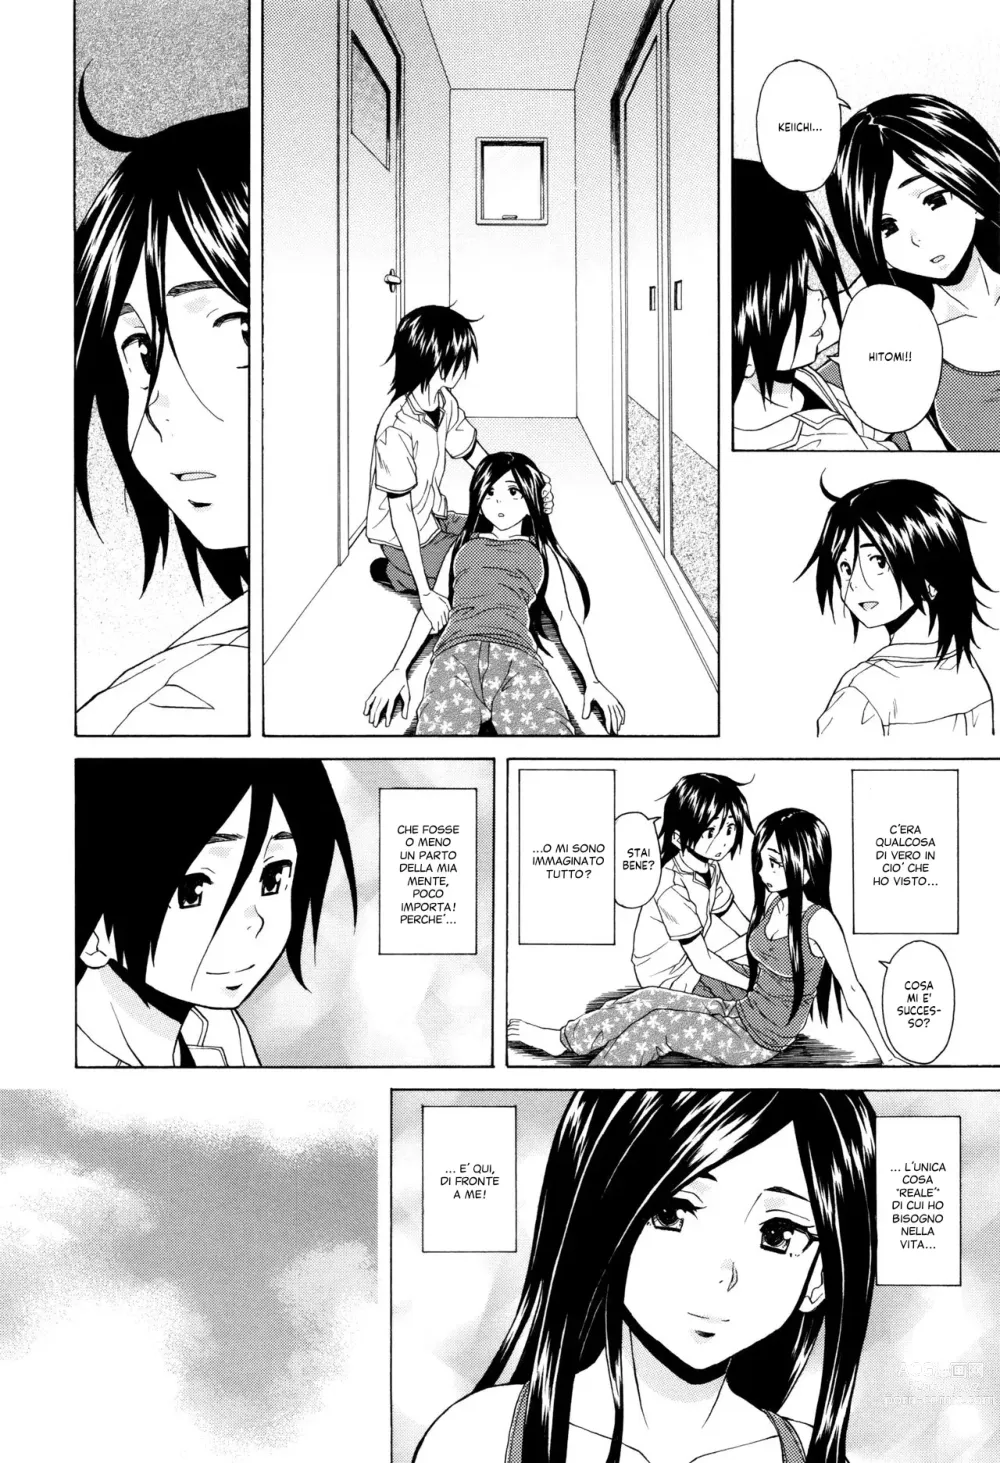 Page 204 of manga Segreti, Suicidi e Sorelle (decensored)